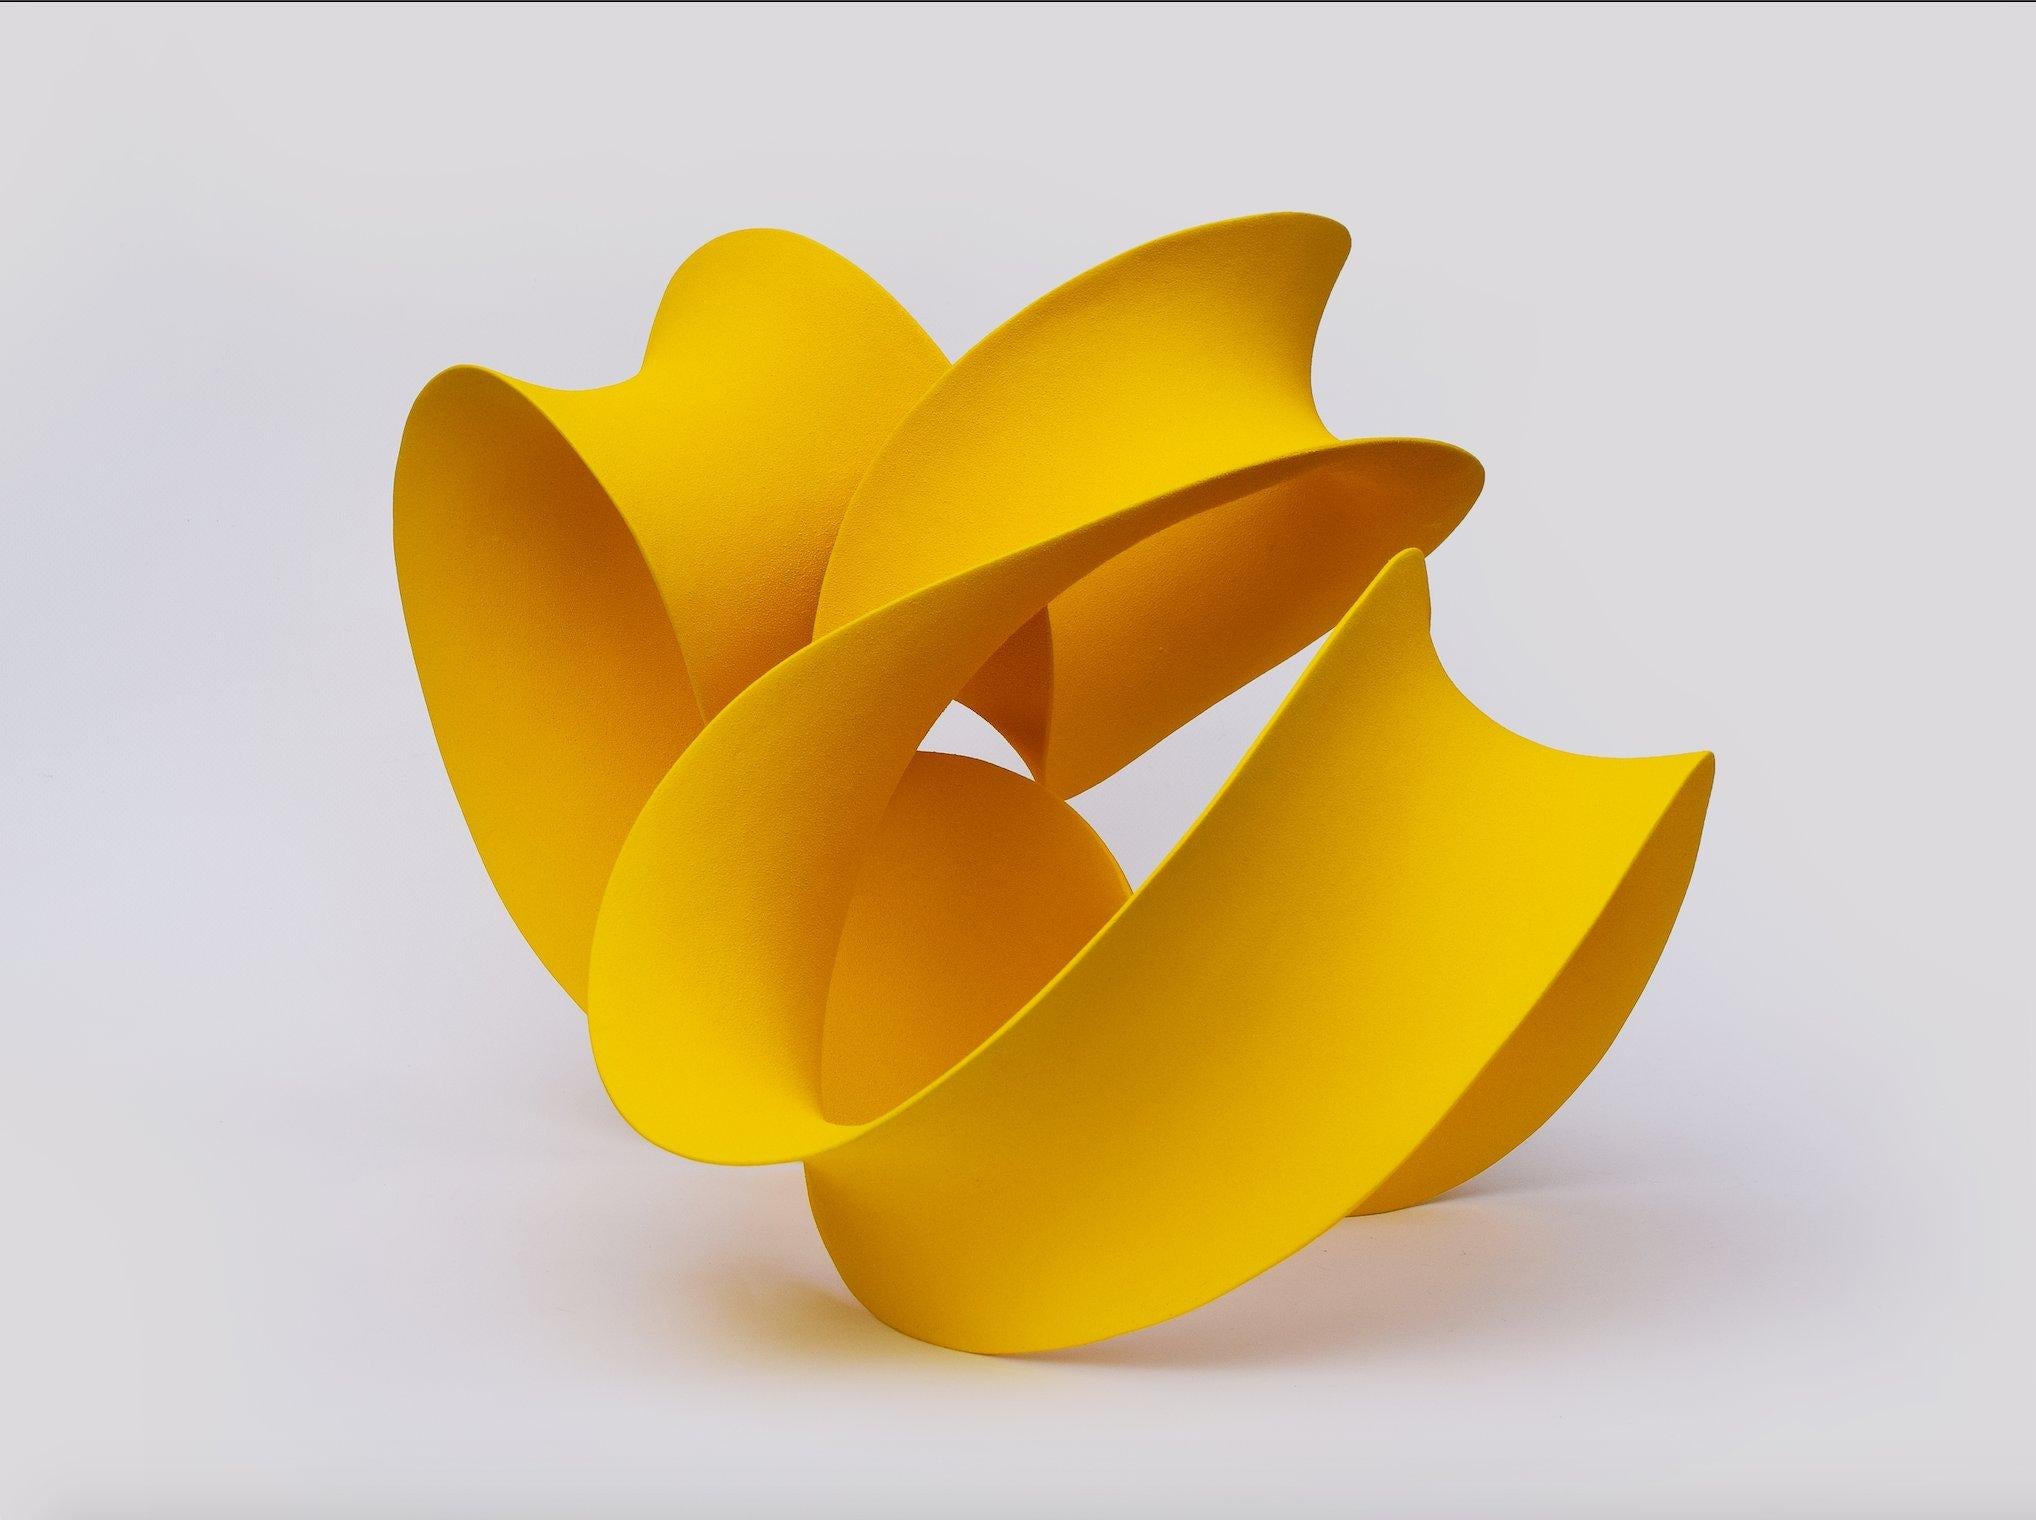 Yellow Curved Form, 2023 (Céramique, C. 14.5 in. h x 22.4 in. w x 17.7 in. d, Object No. : 4190)

Merete travaille avec des formes sculpturales abstraites et s'intéresse à la manière dont on définit et appréhende l'espace à travers la forme